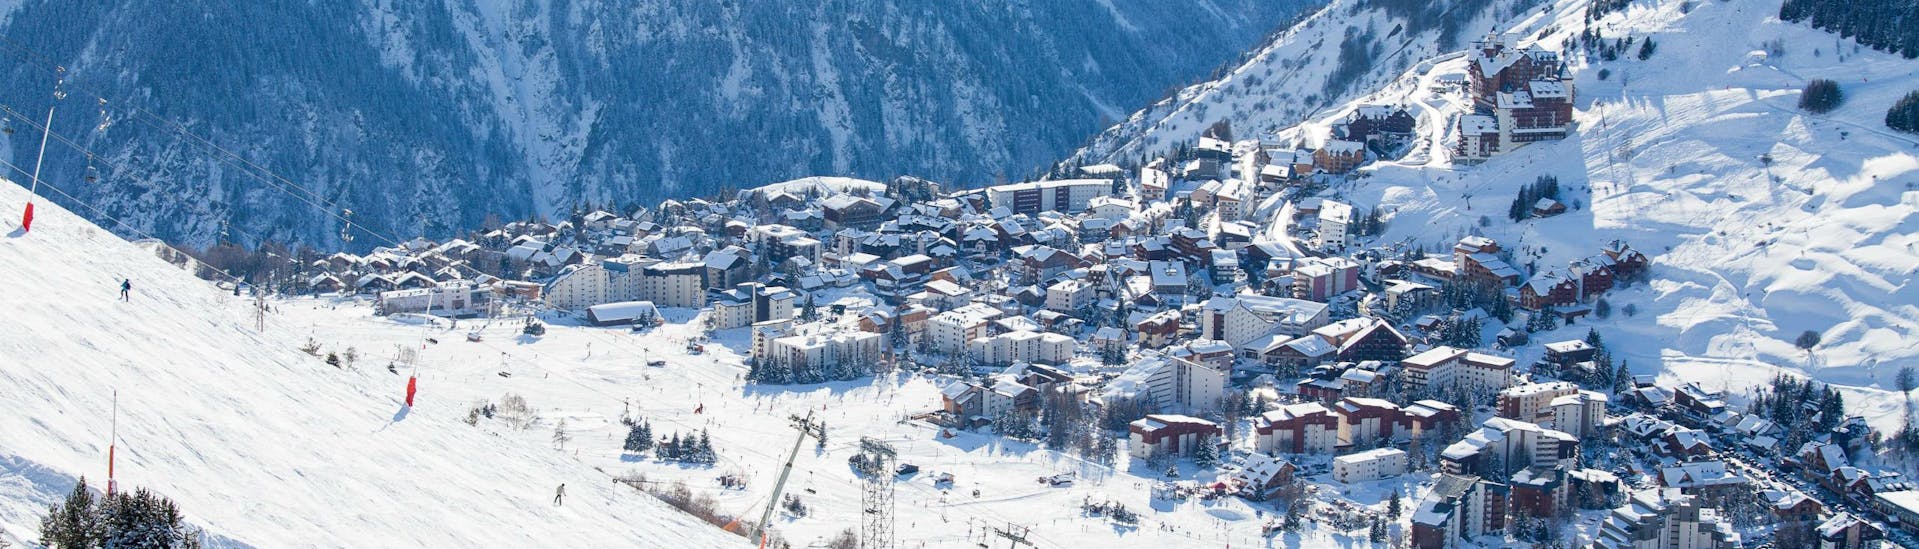 Une photo de la deuxième plus ancienne station de ski de France, Les Deux Alpes, où les écoles de ski locales proposent des cours de ski pour ceux qui veulent apprendre à skier.